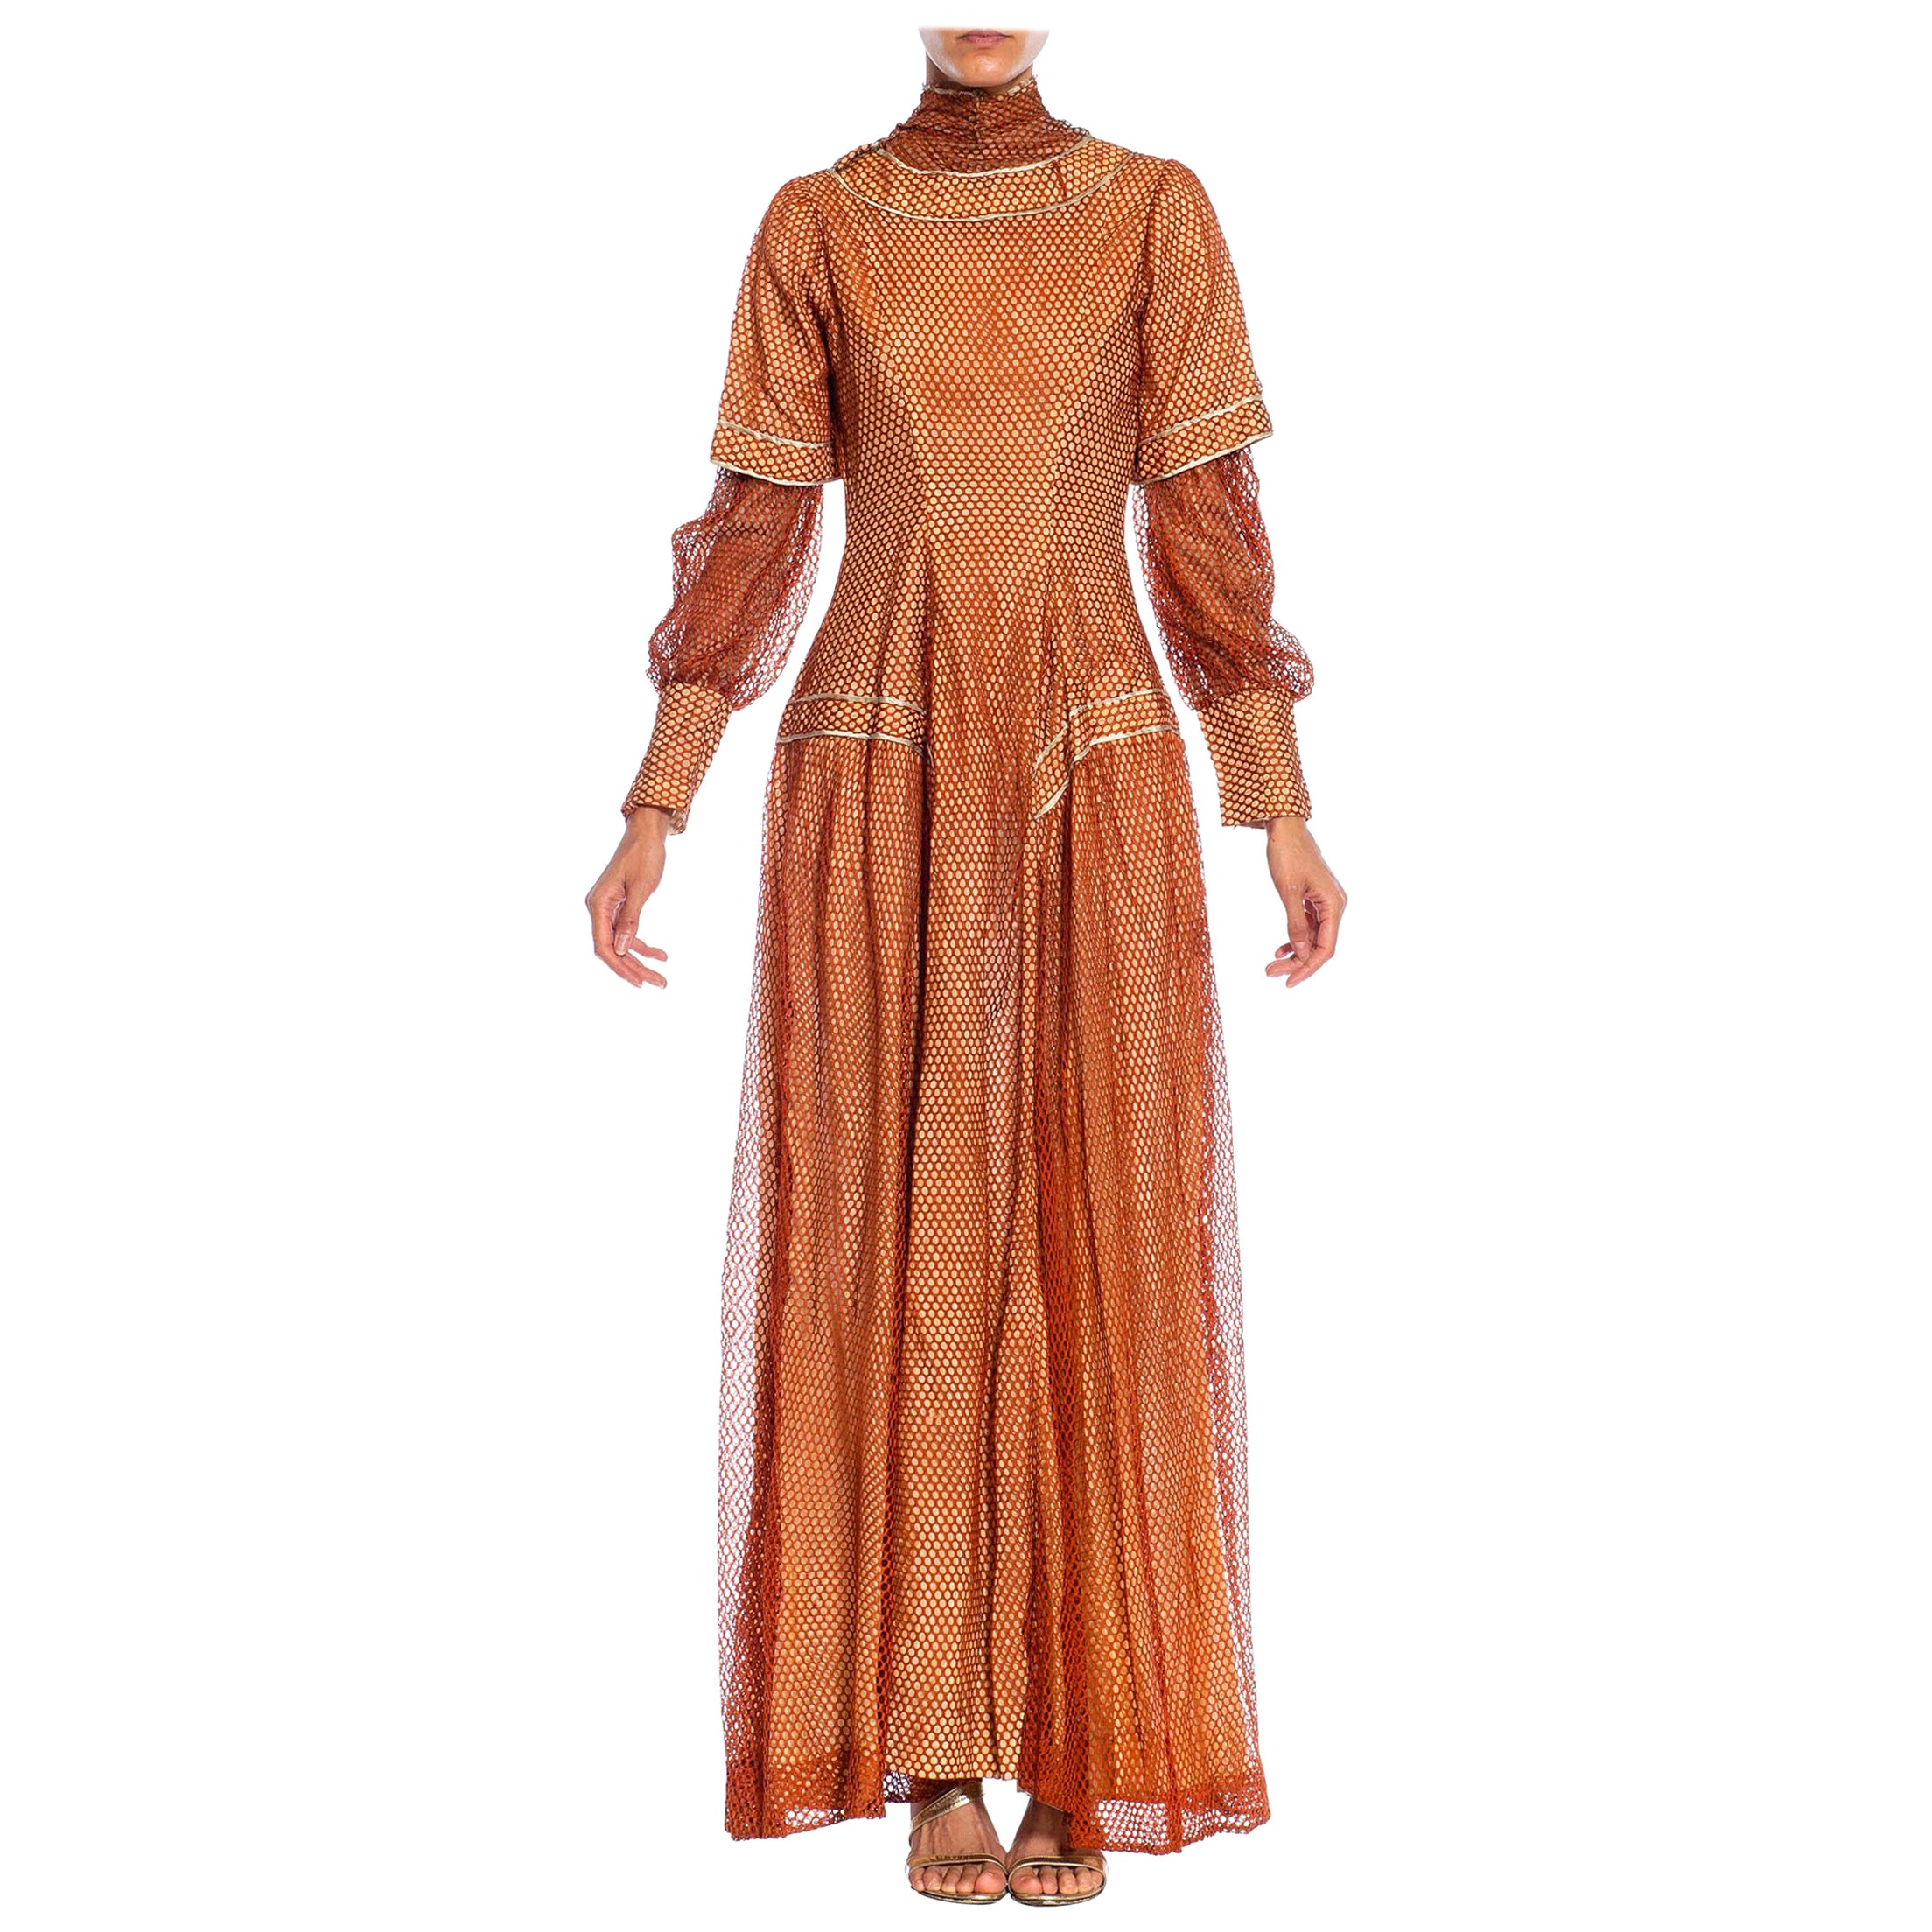 Robe édouardienne en maille de soie bronze sur soie rose pâle avec manches longues en vente